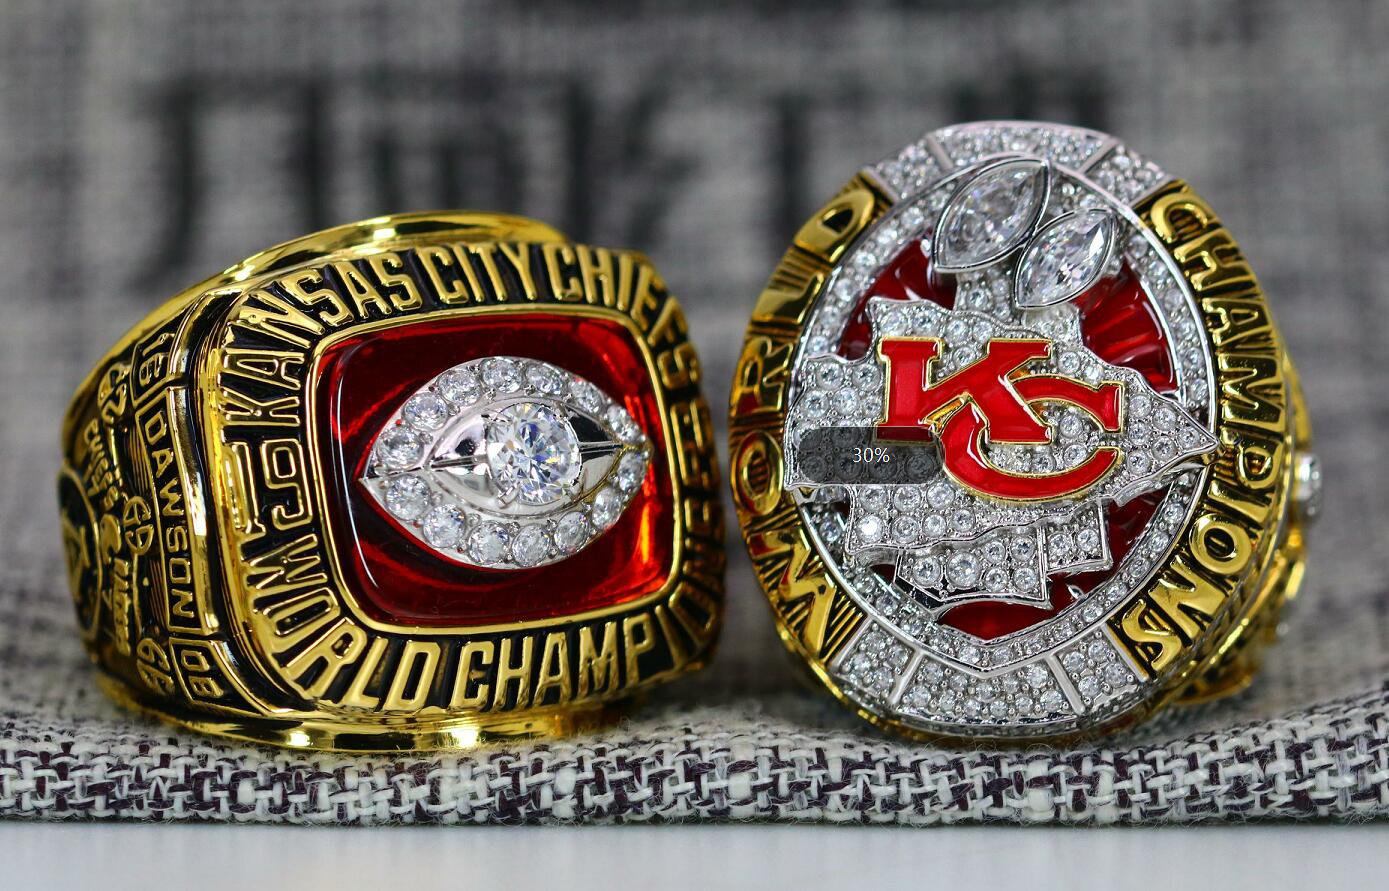 Kc Chiefs Replica Super Bowl Ring Image to u